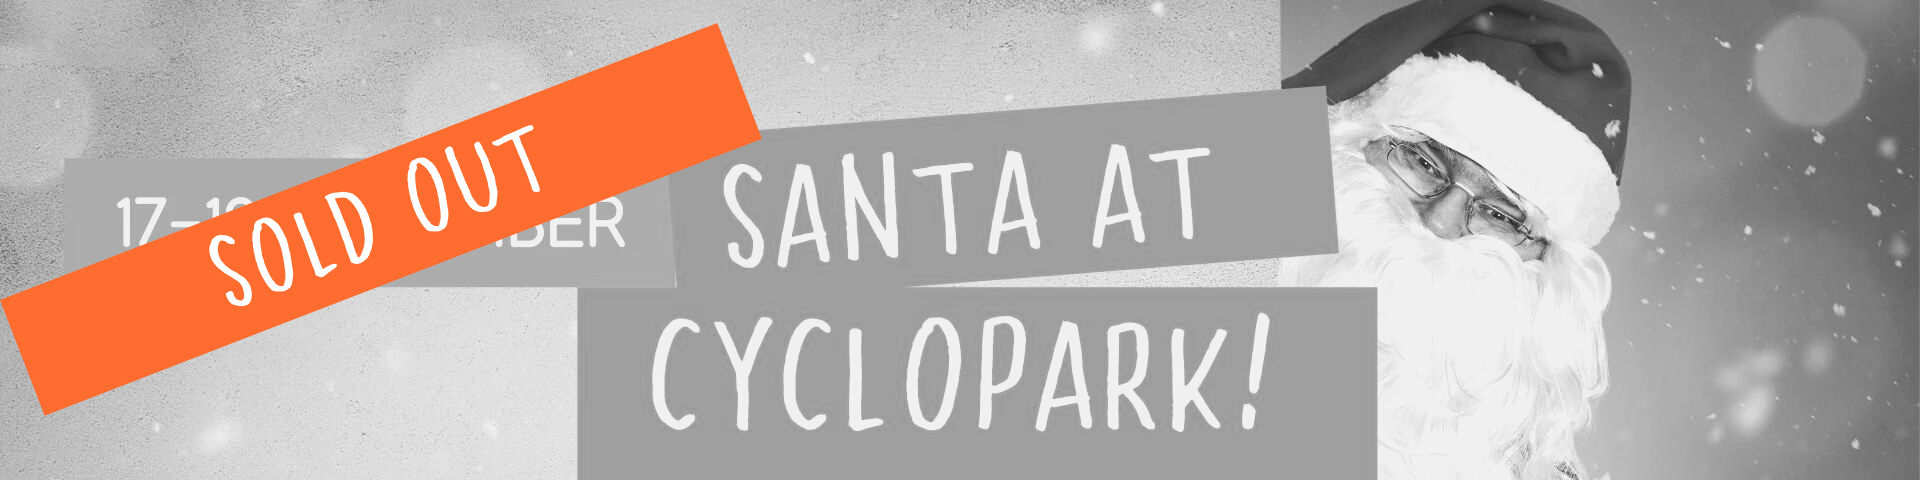 Santa At Cyclopark Sold Out Banner